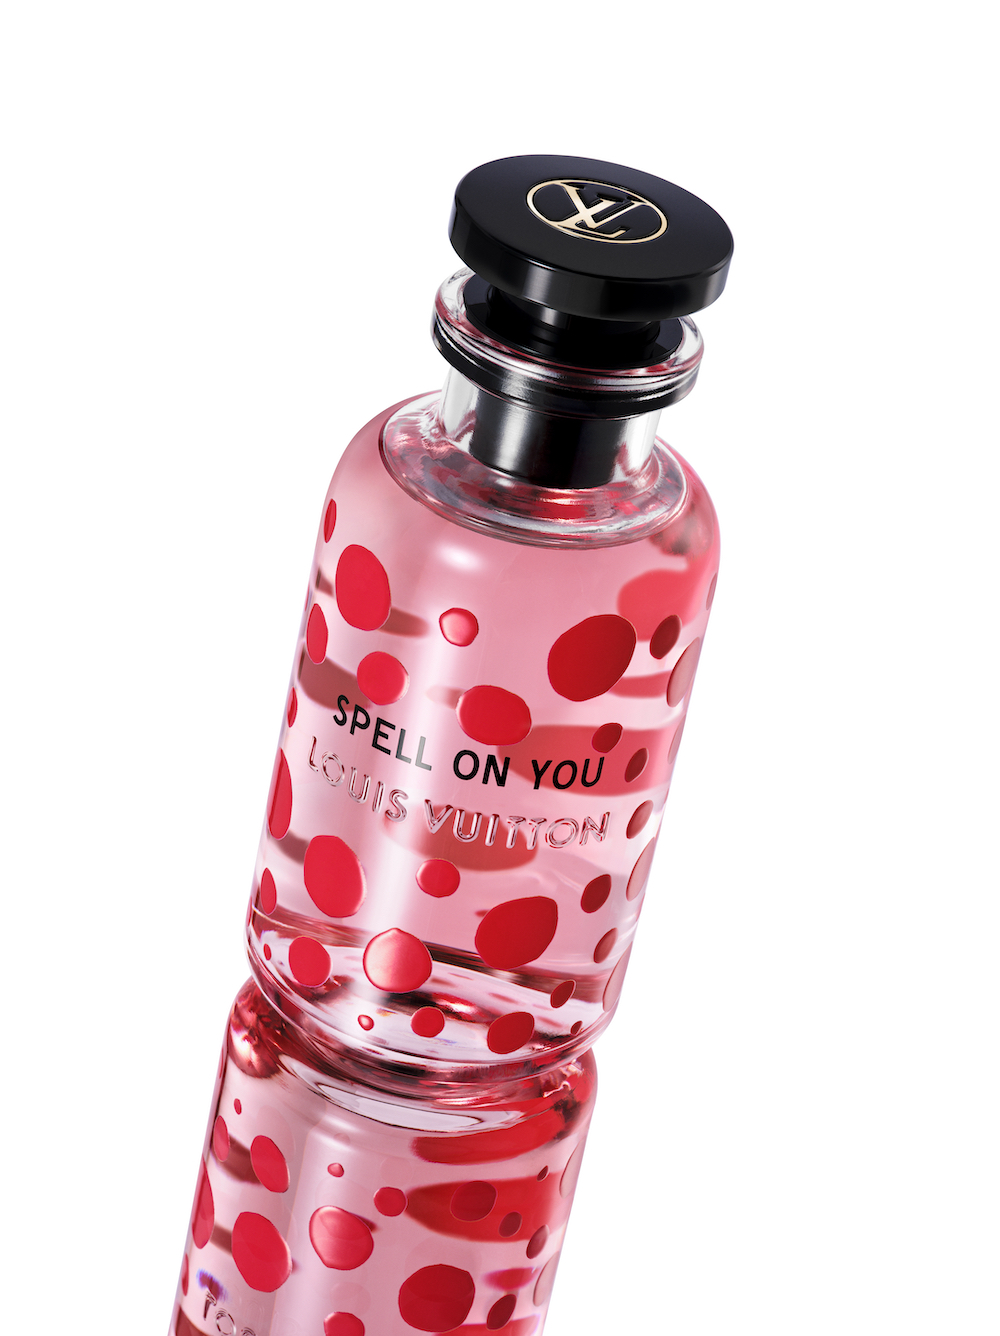 Le parfum Spell on You de Louis Vuitton vu par Yayoi Kusama